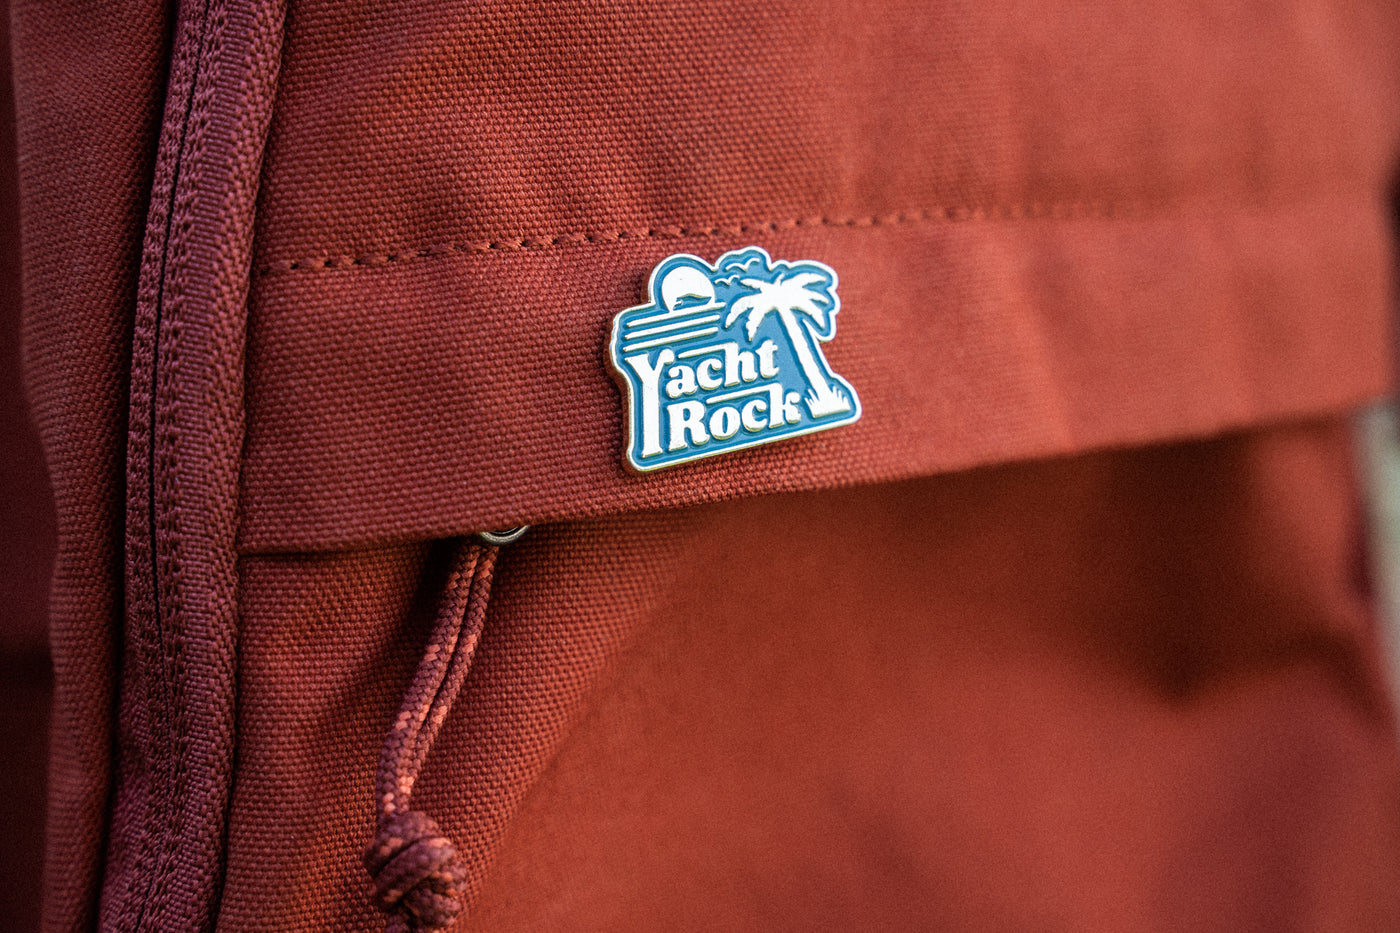 Yacht Rock Enamel Pin